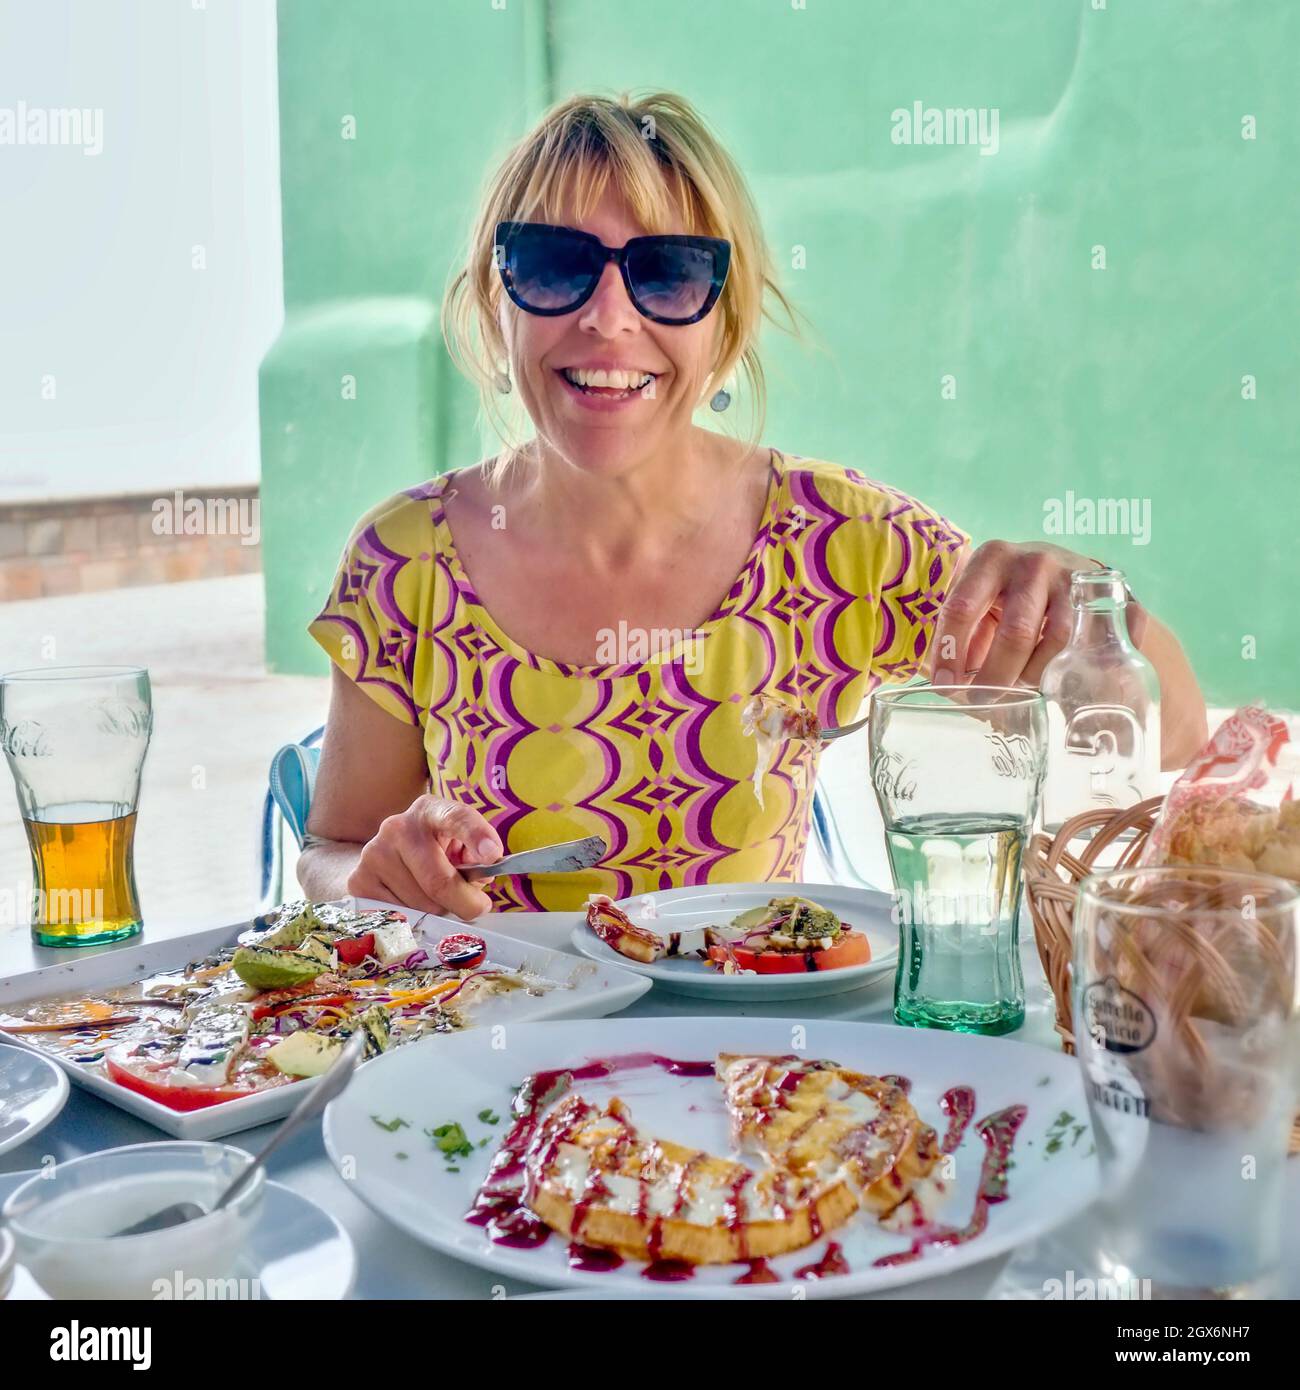 une jeune femme avec des lunettes de soleil et des cheveux blonds brochés est assise à une table richement fixée avec un repas avec de la nourriture et des boissons à l'extérieur sur une terrasse. Banque D'Images